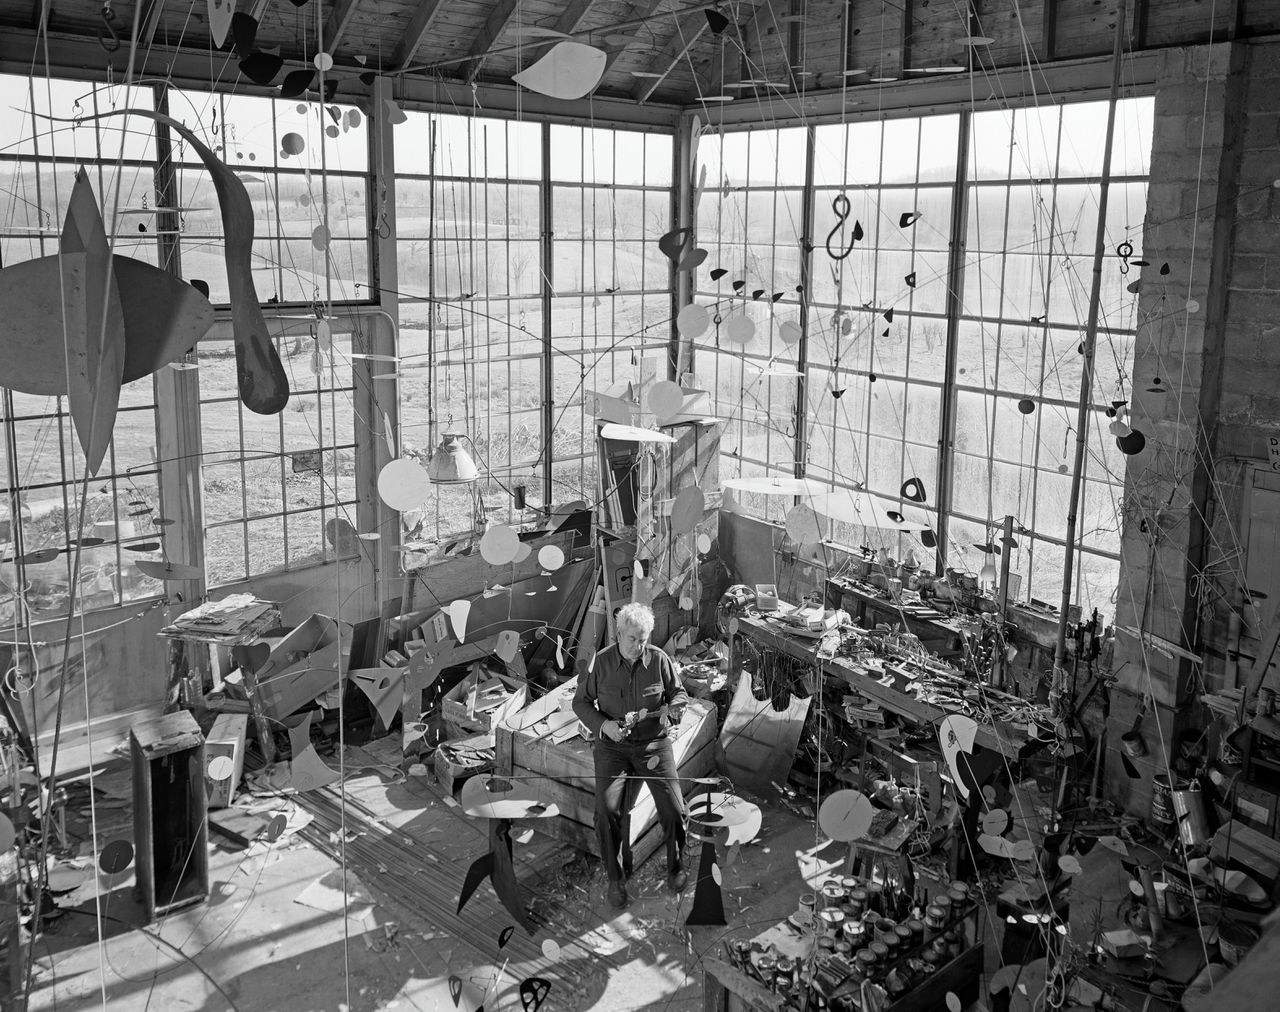 Circa 1955: Alexander Calder